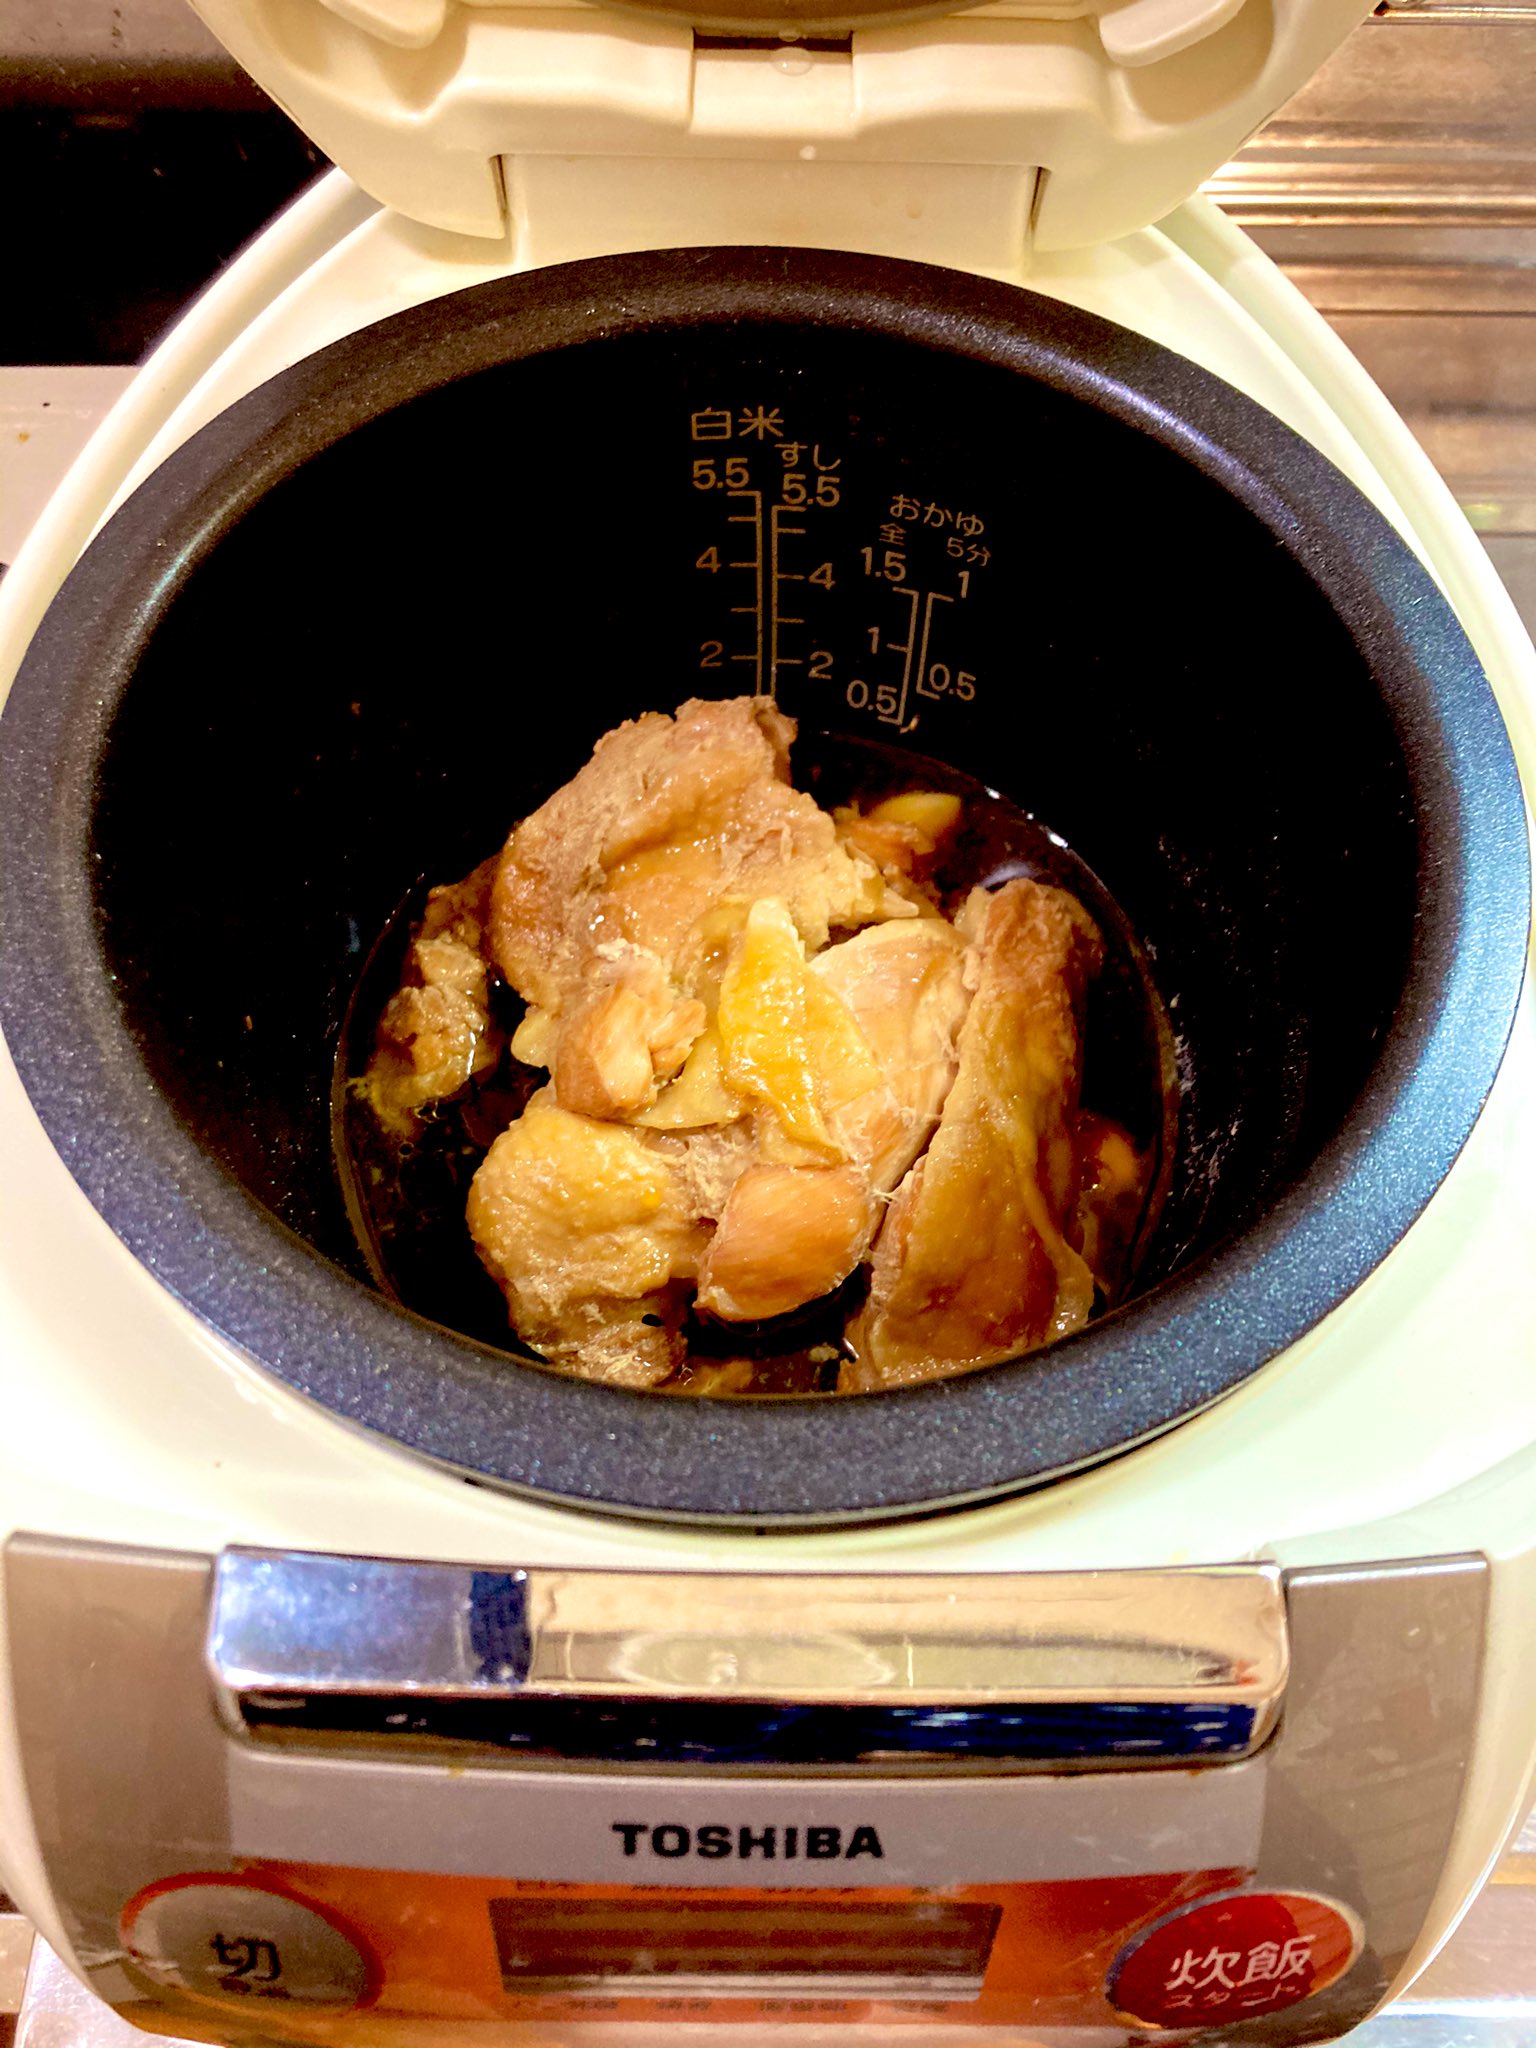 菜箸でひっくり返した炊飯器照り焼きチキン